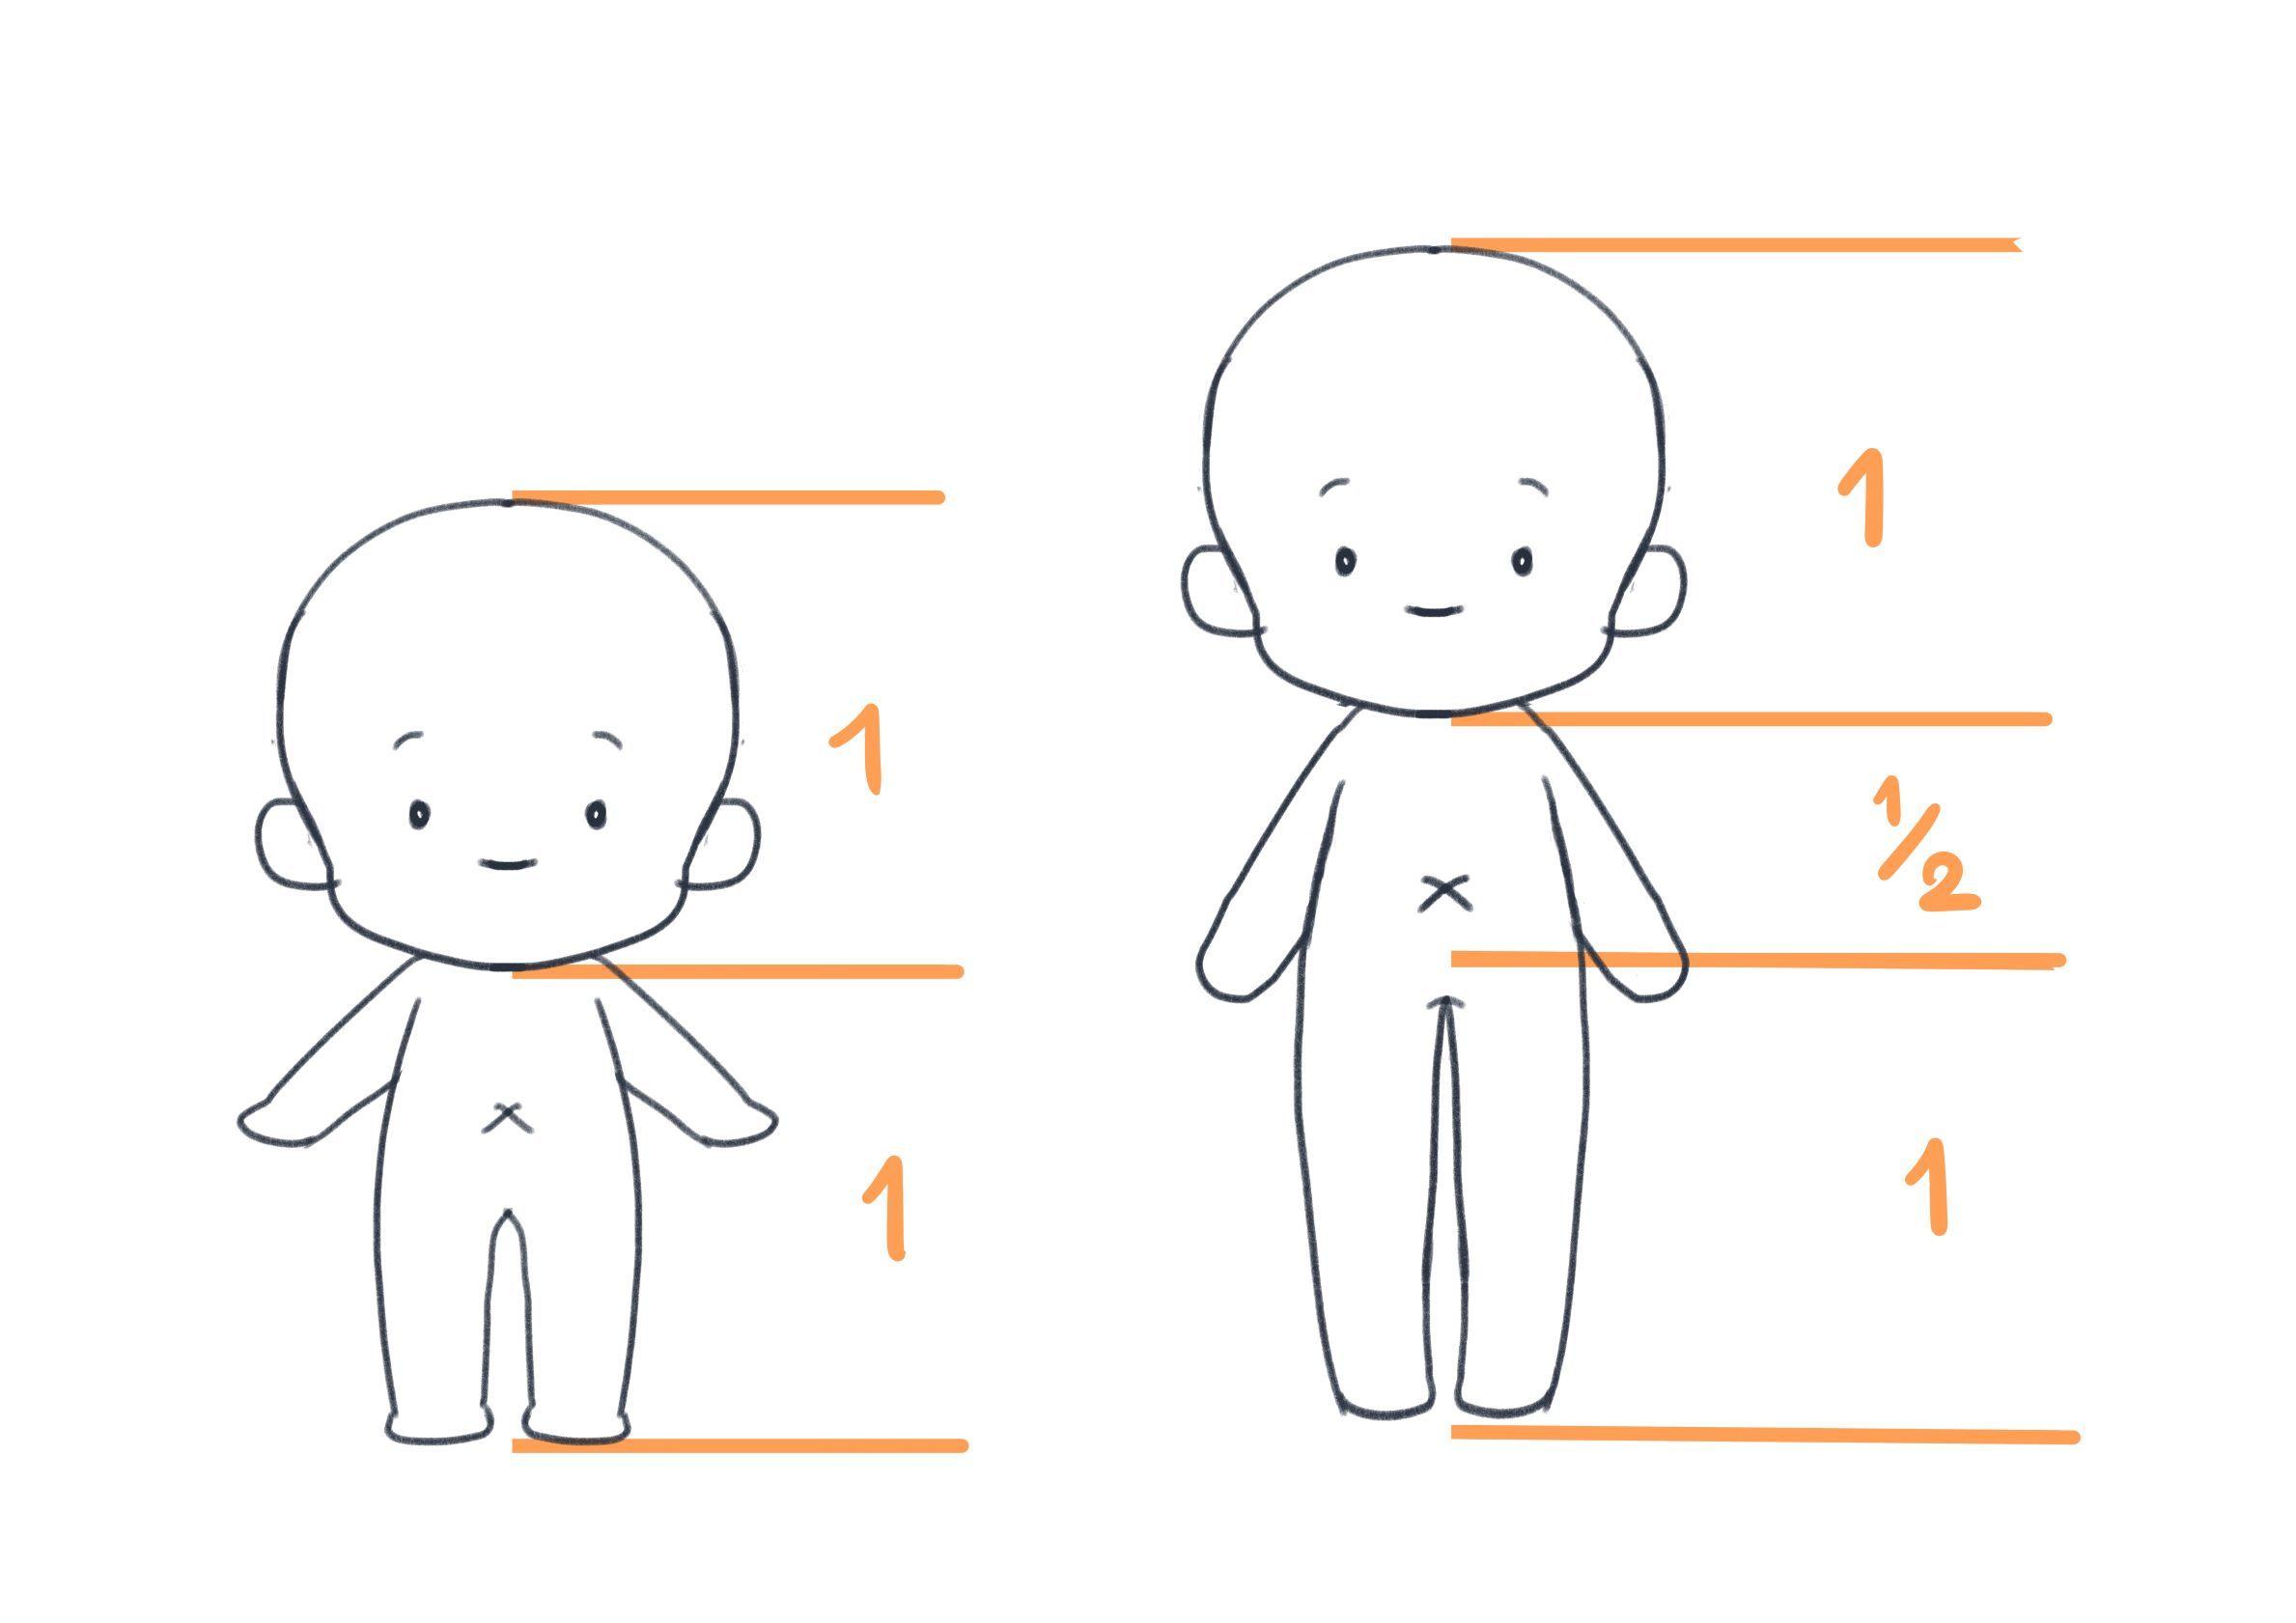 经常使用的角色q版的身体比例左边的1:1更圆润可爱,1:1/2:1在右边